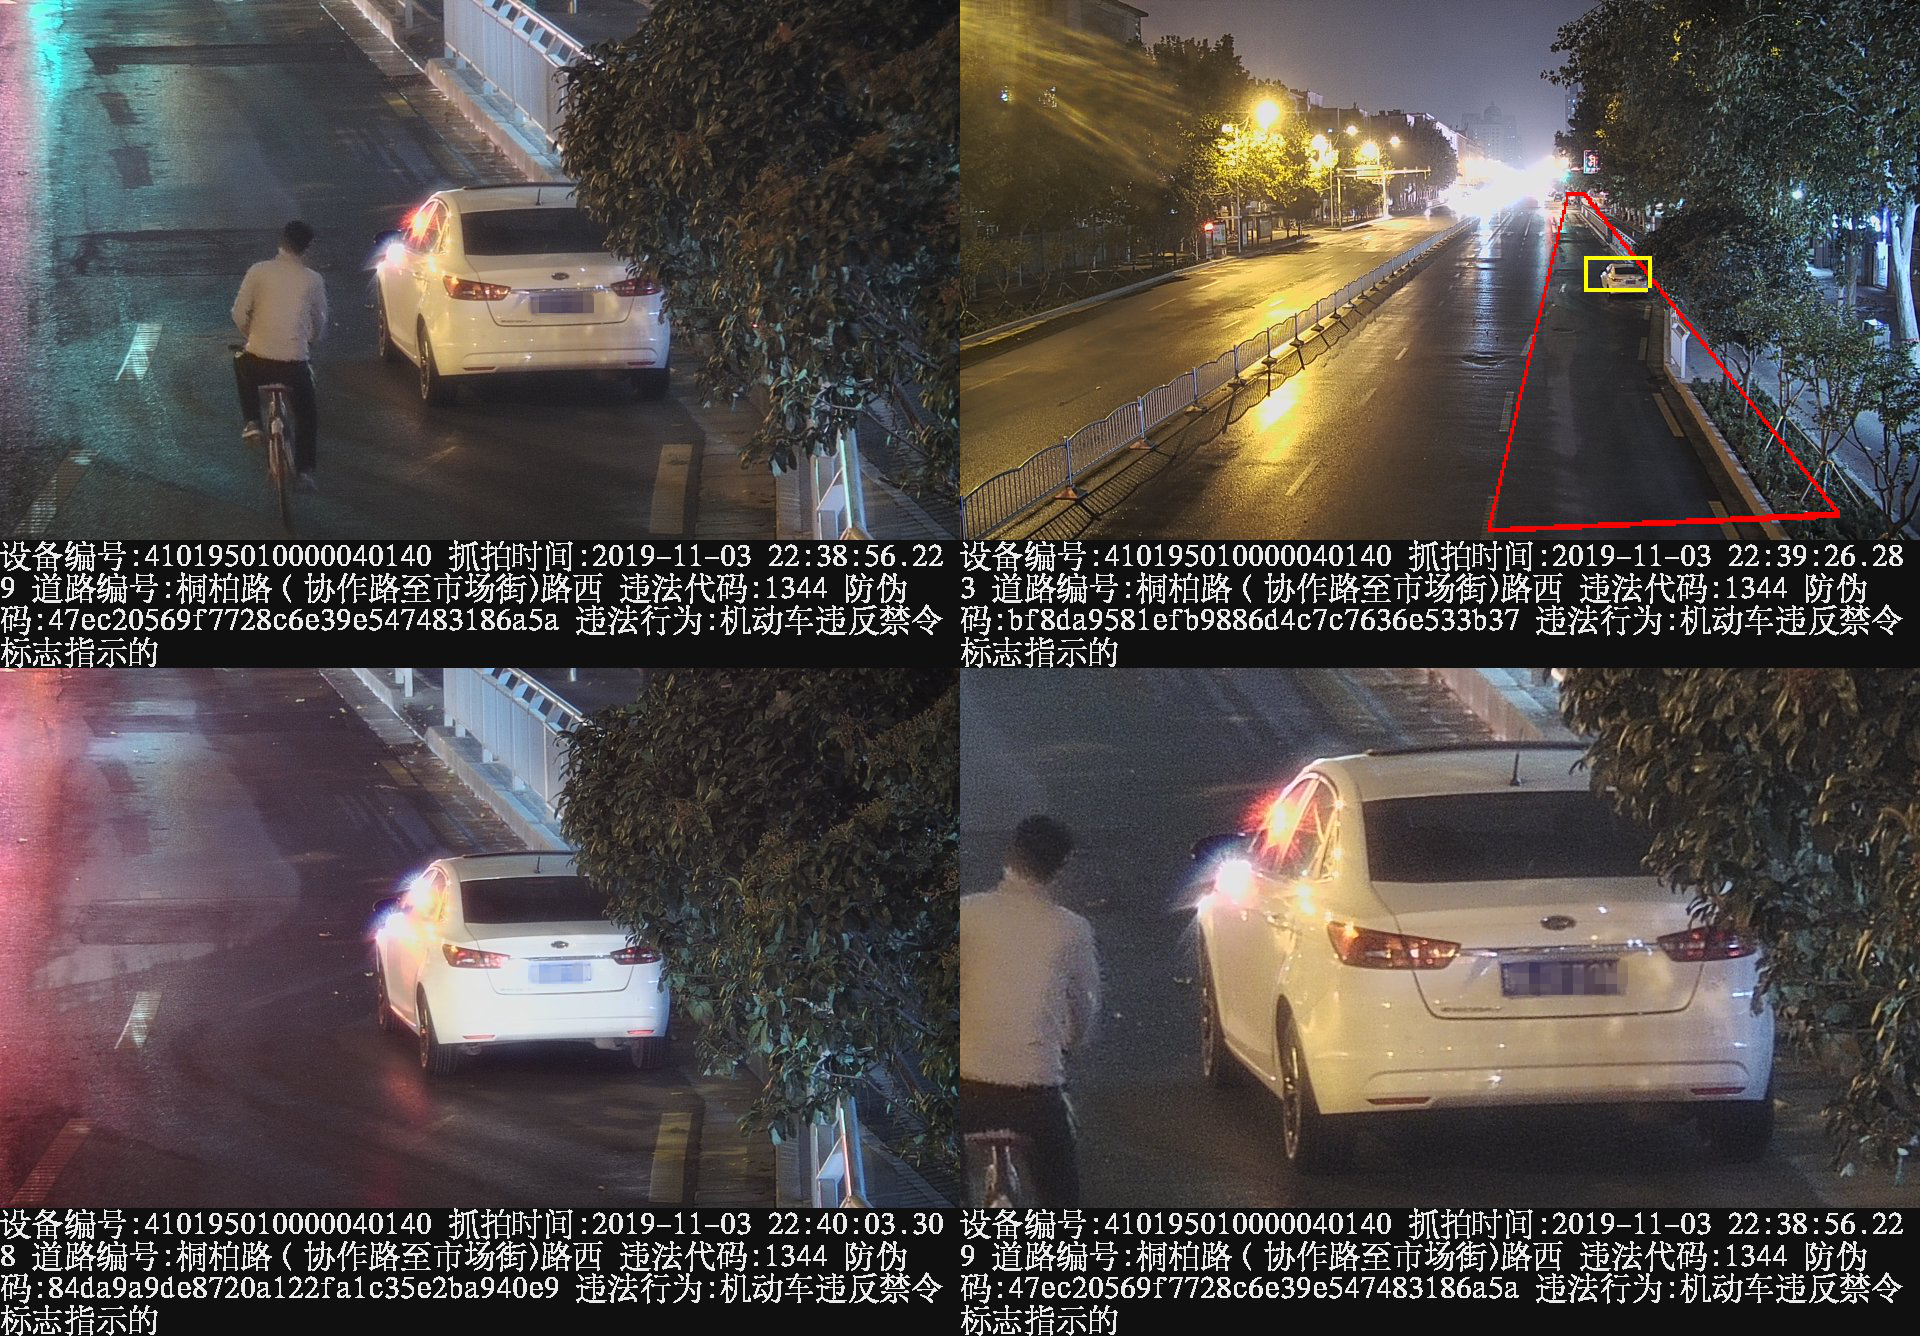 郑州新增83套违法停车抓拍设备 本月15日正式投用